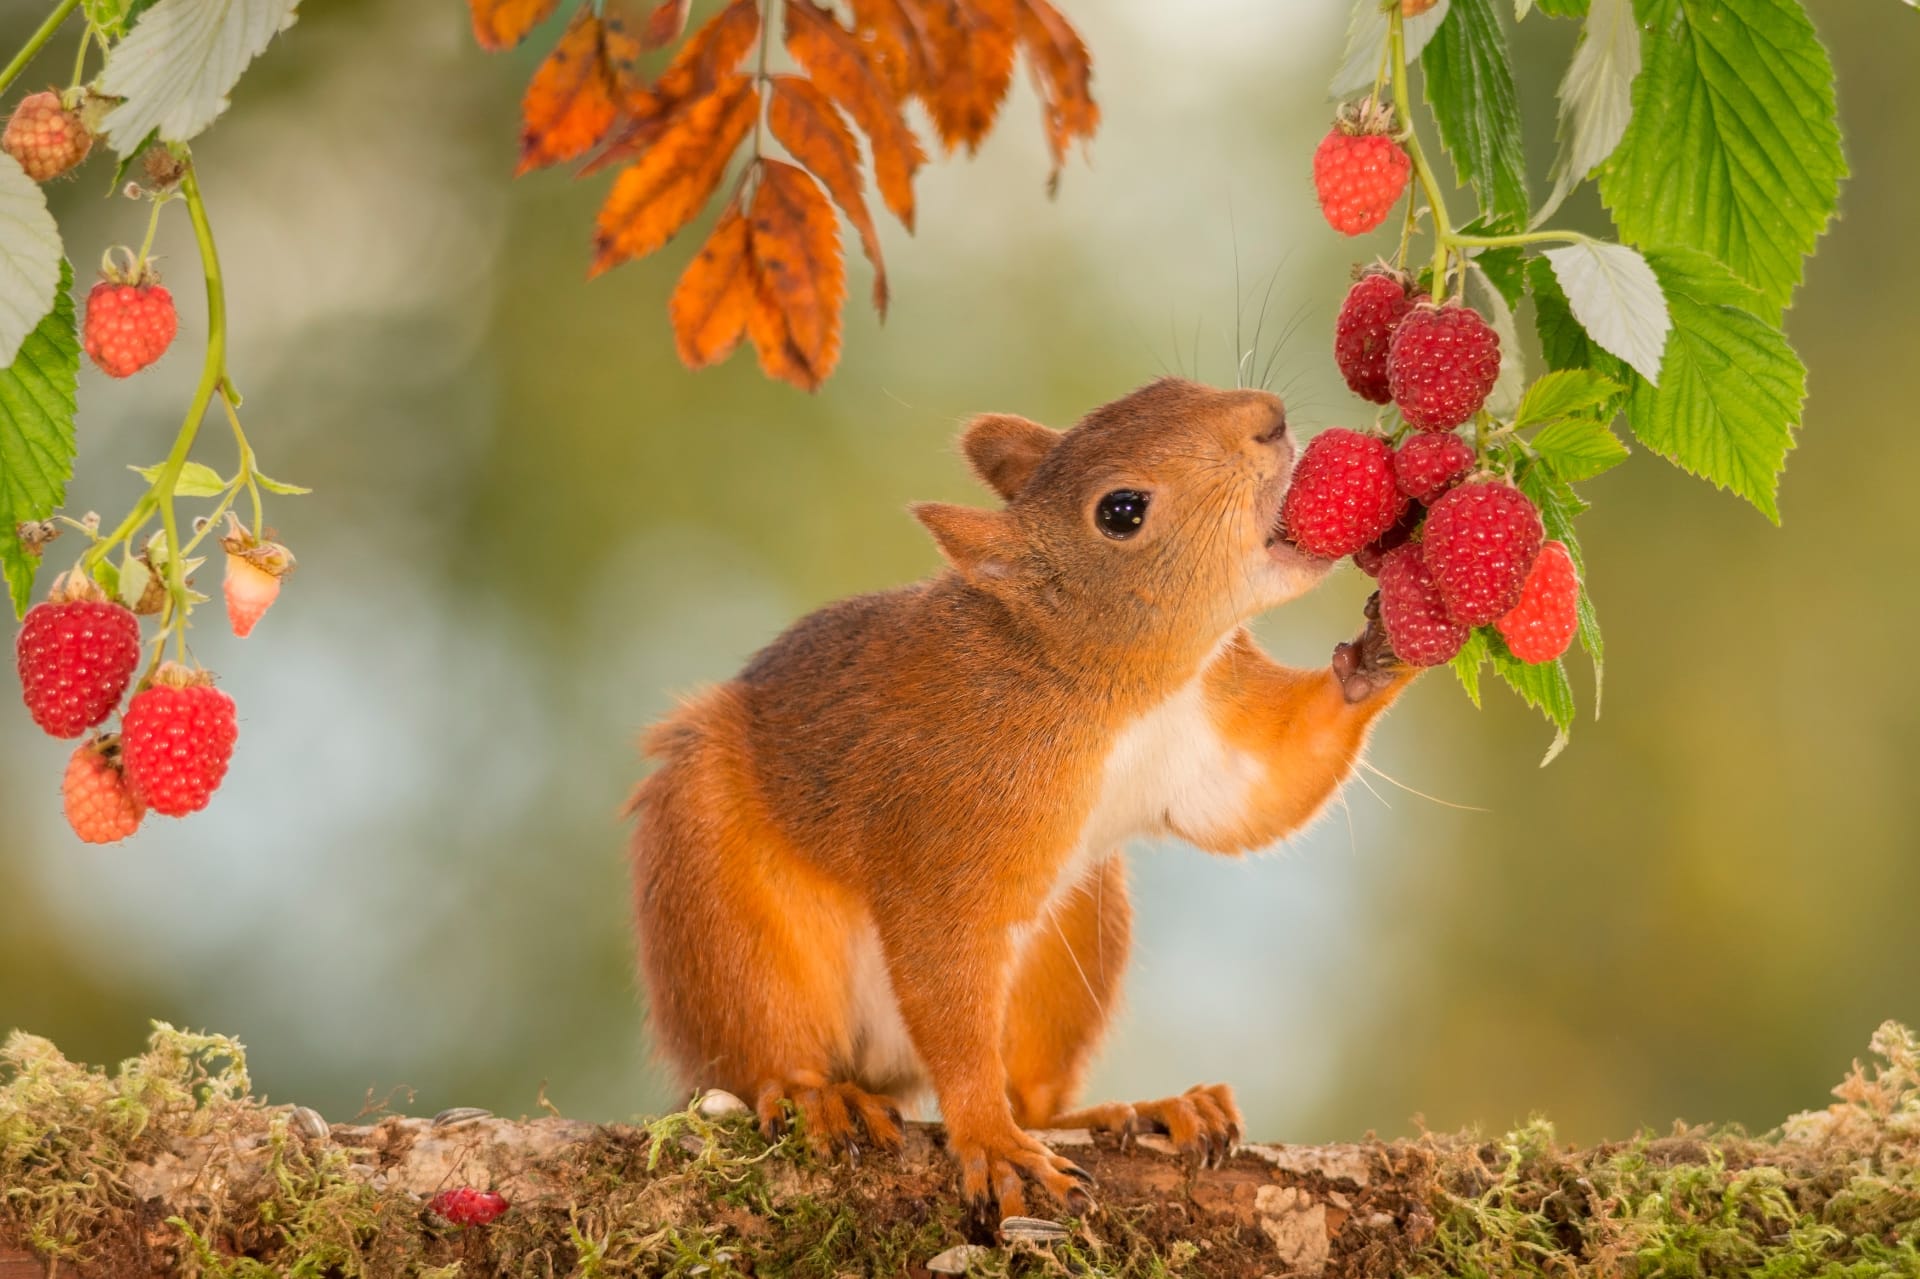 Eichhörnchen mögen nicht nur Nüsse, auch Früchte stehen auf ihrem Speiseplan.